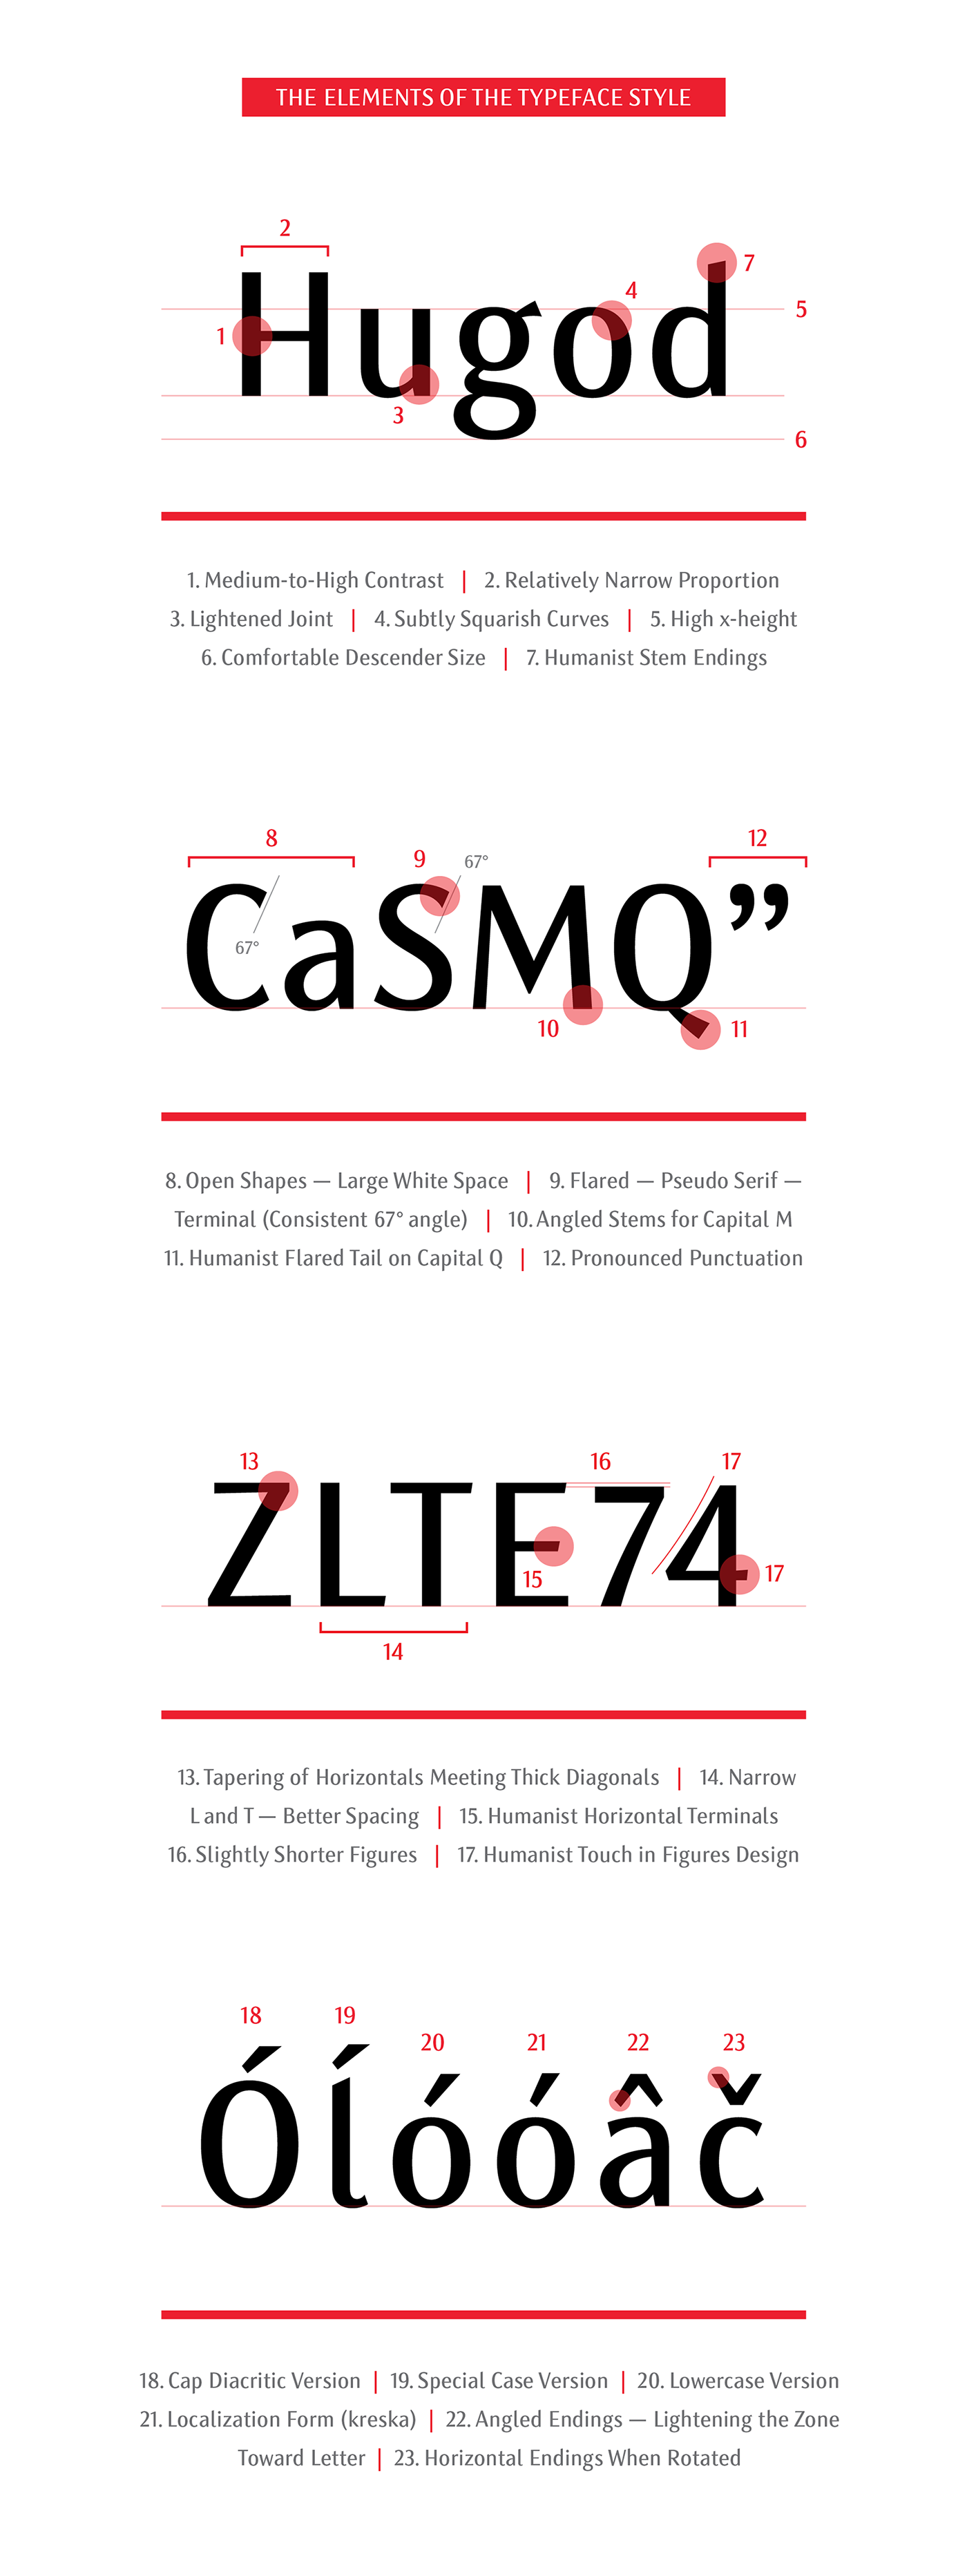 font Typeface sans sans-serif sans serif elegant Classic multilingual text Web